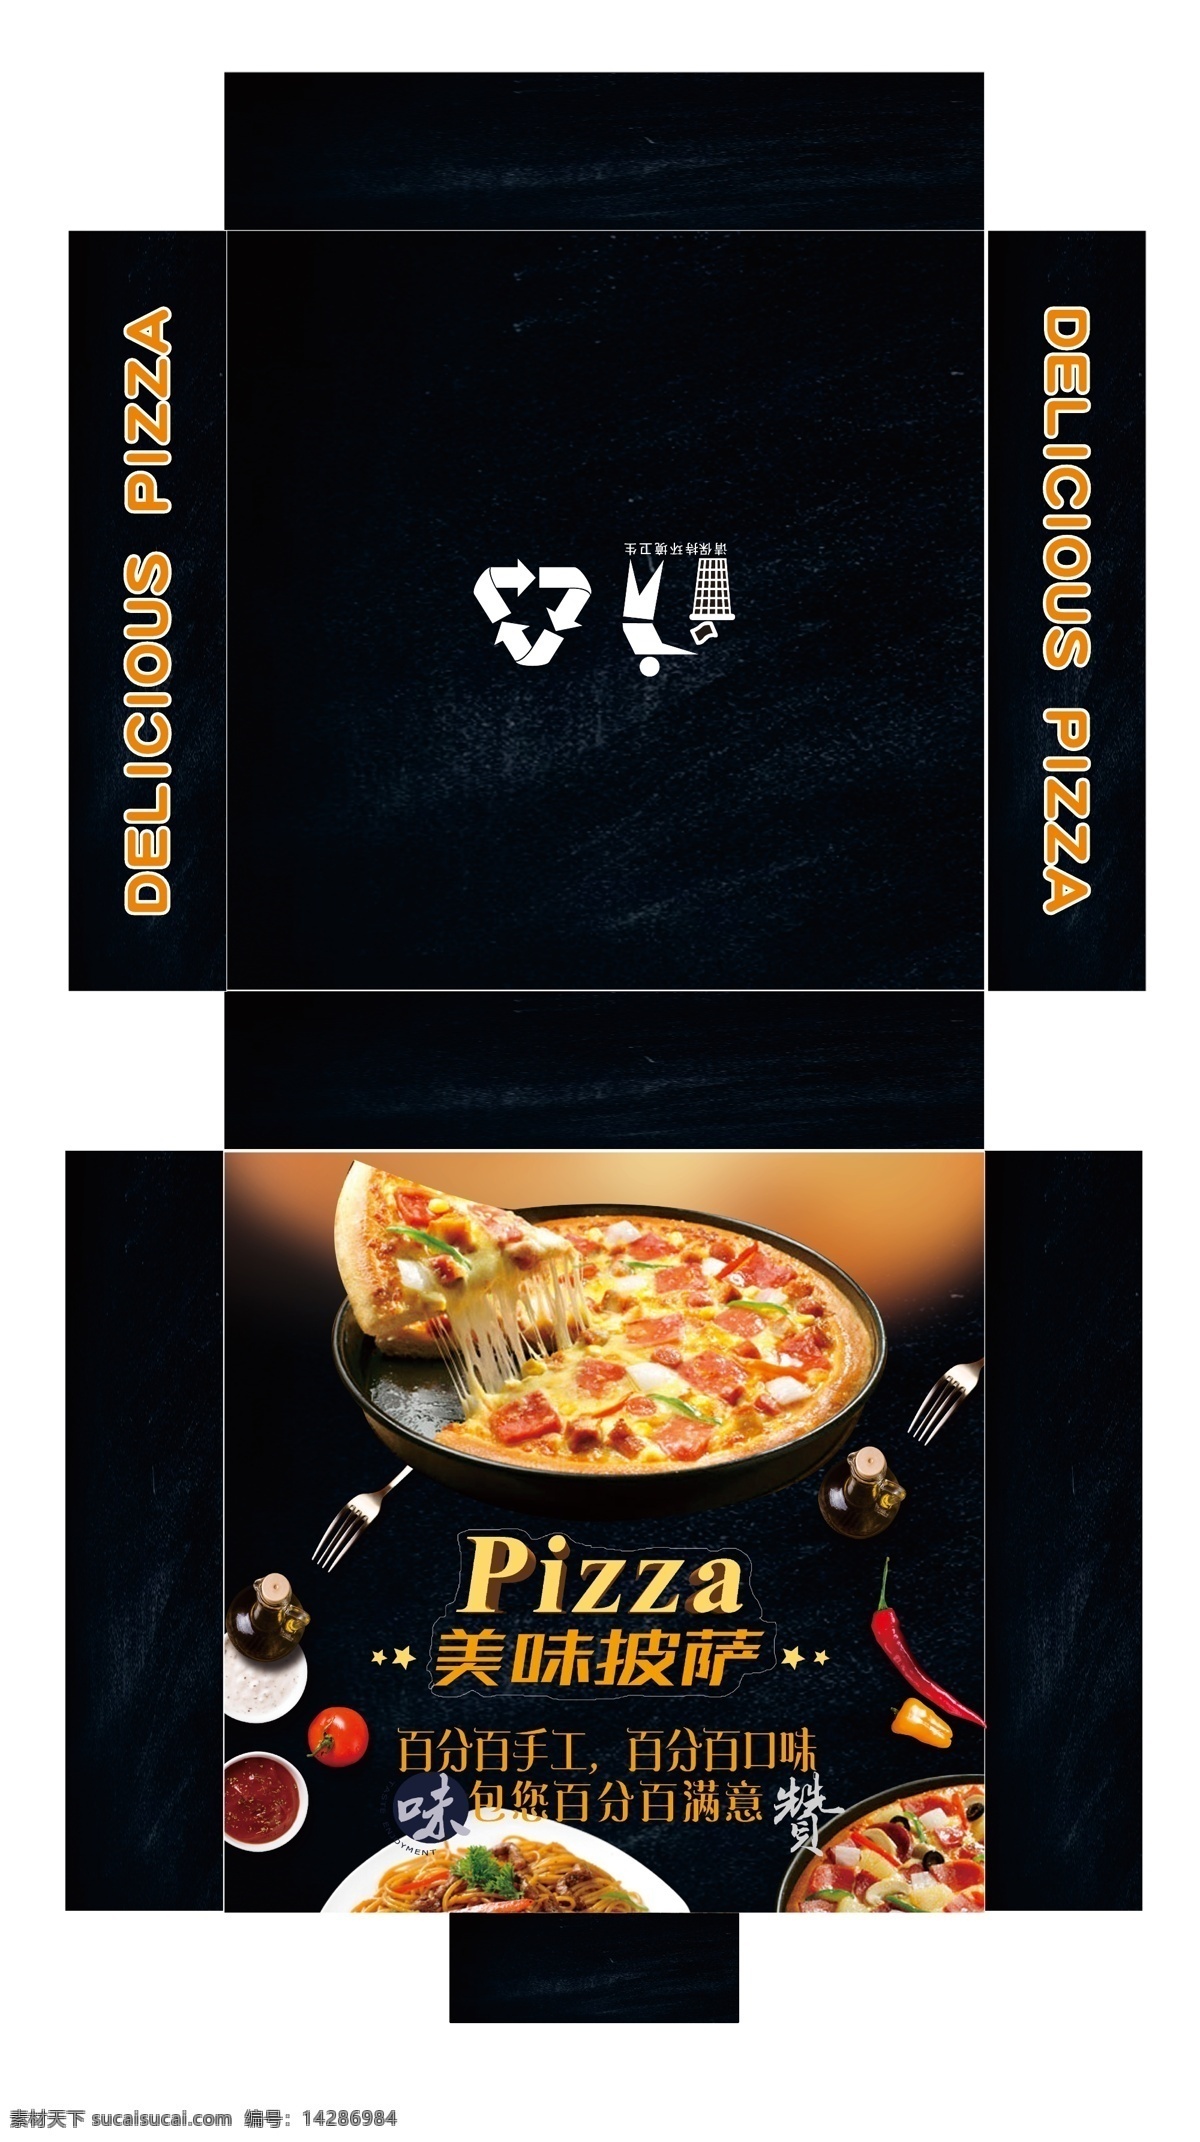 披萨包装 8寸披萨包装 披萨包装盒 披萨展开图 披萨外卖盒 外卖披萨盒 披萨打包盒 包装设计